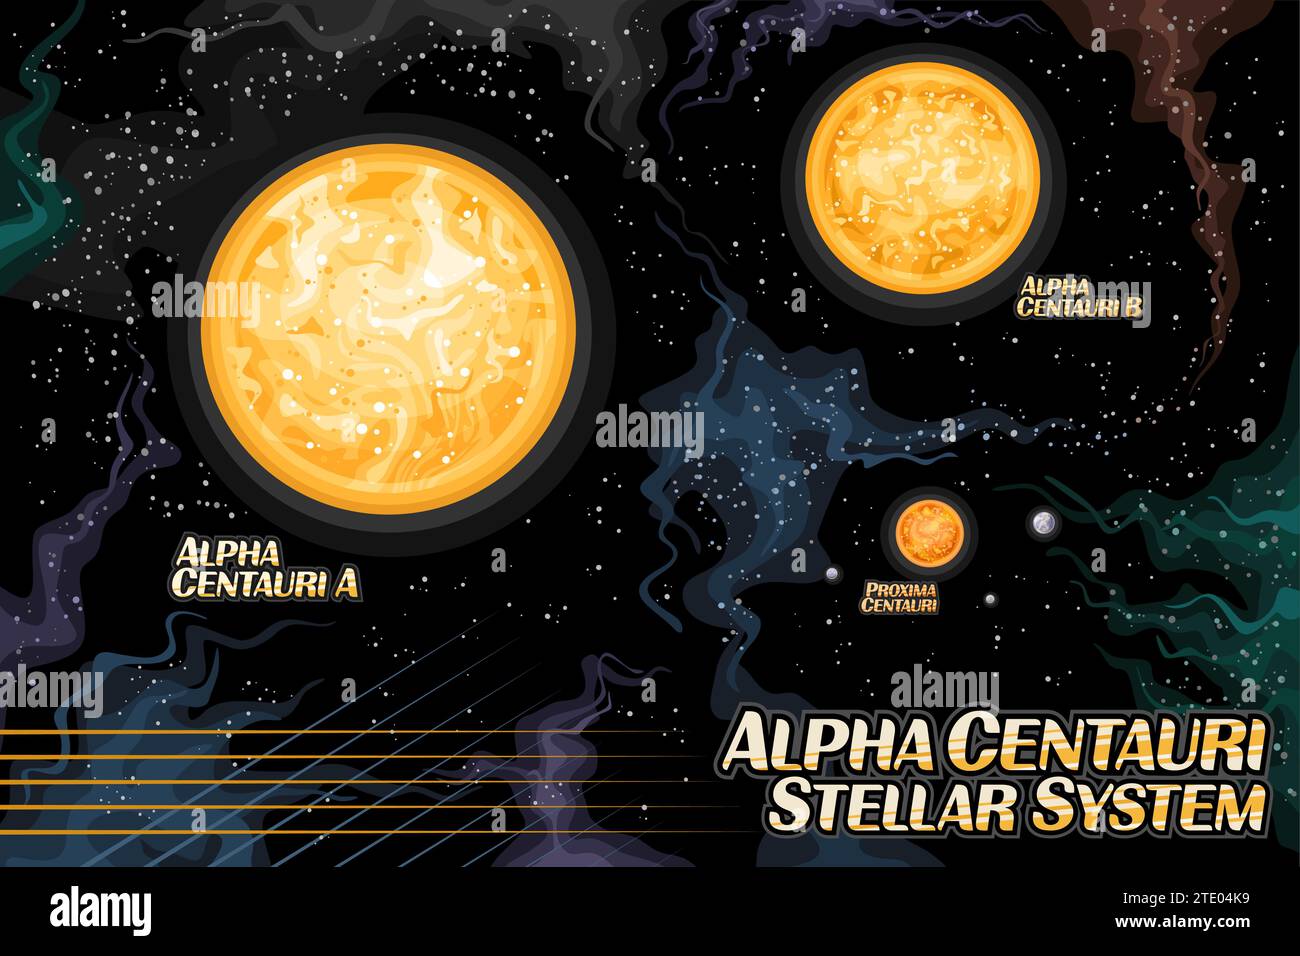 Illustrazione vettoriale del sistema stellare Alpha Centauri, poster orizzontale cosmologia con illustrazione del sistema planetario a tre stelle nello spazio profondo, ast Illustrazione Vettoriale